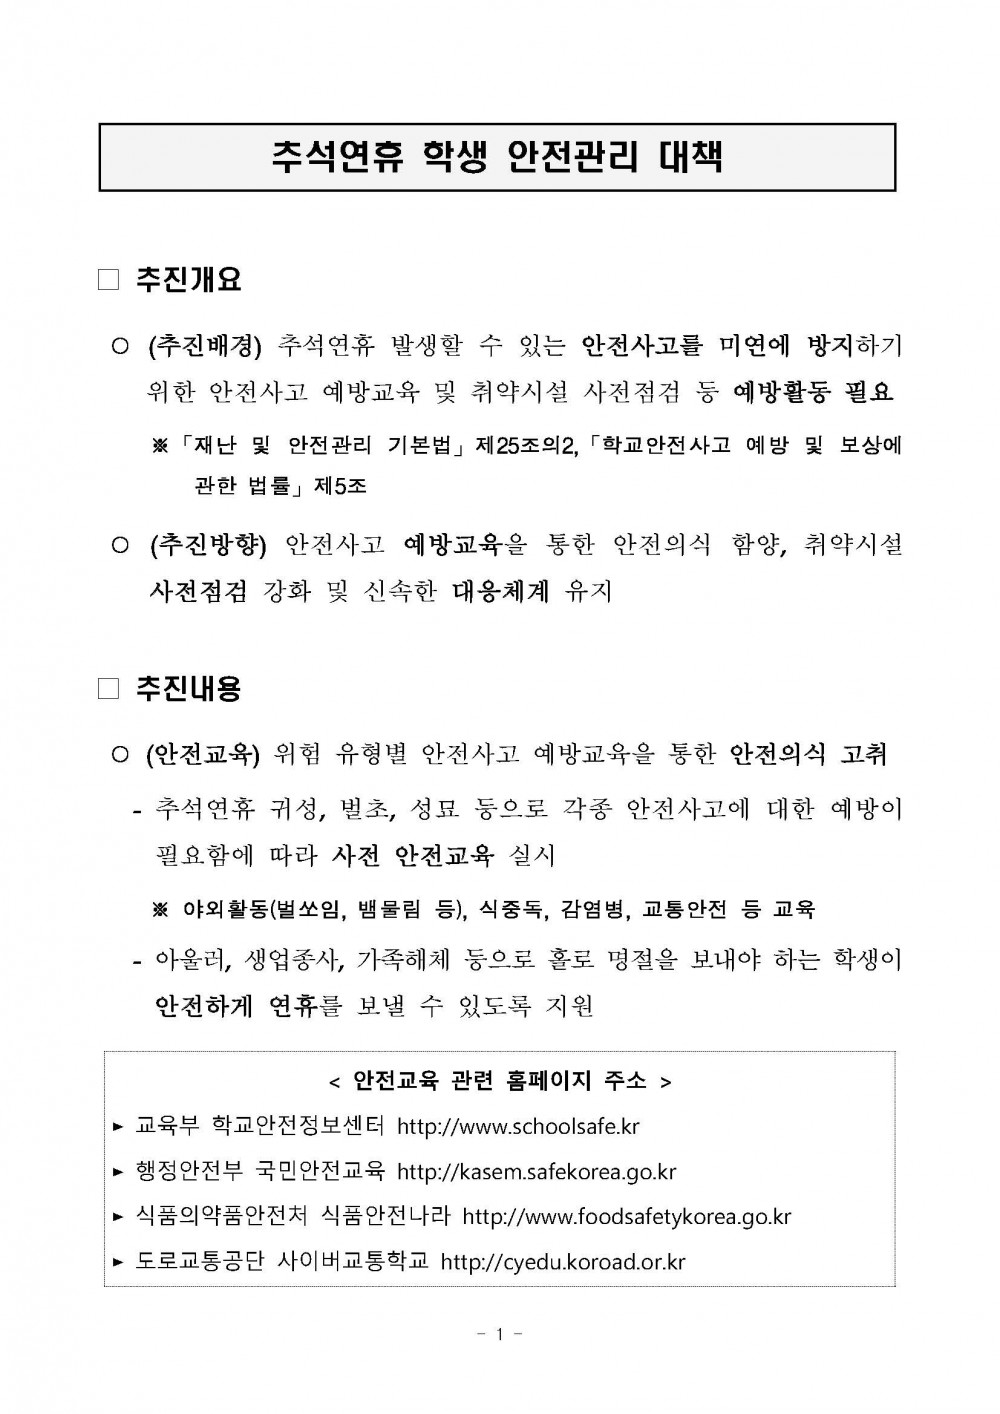 추석연휴 학생 안전관리 대책_페이지_1